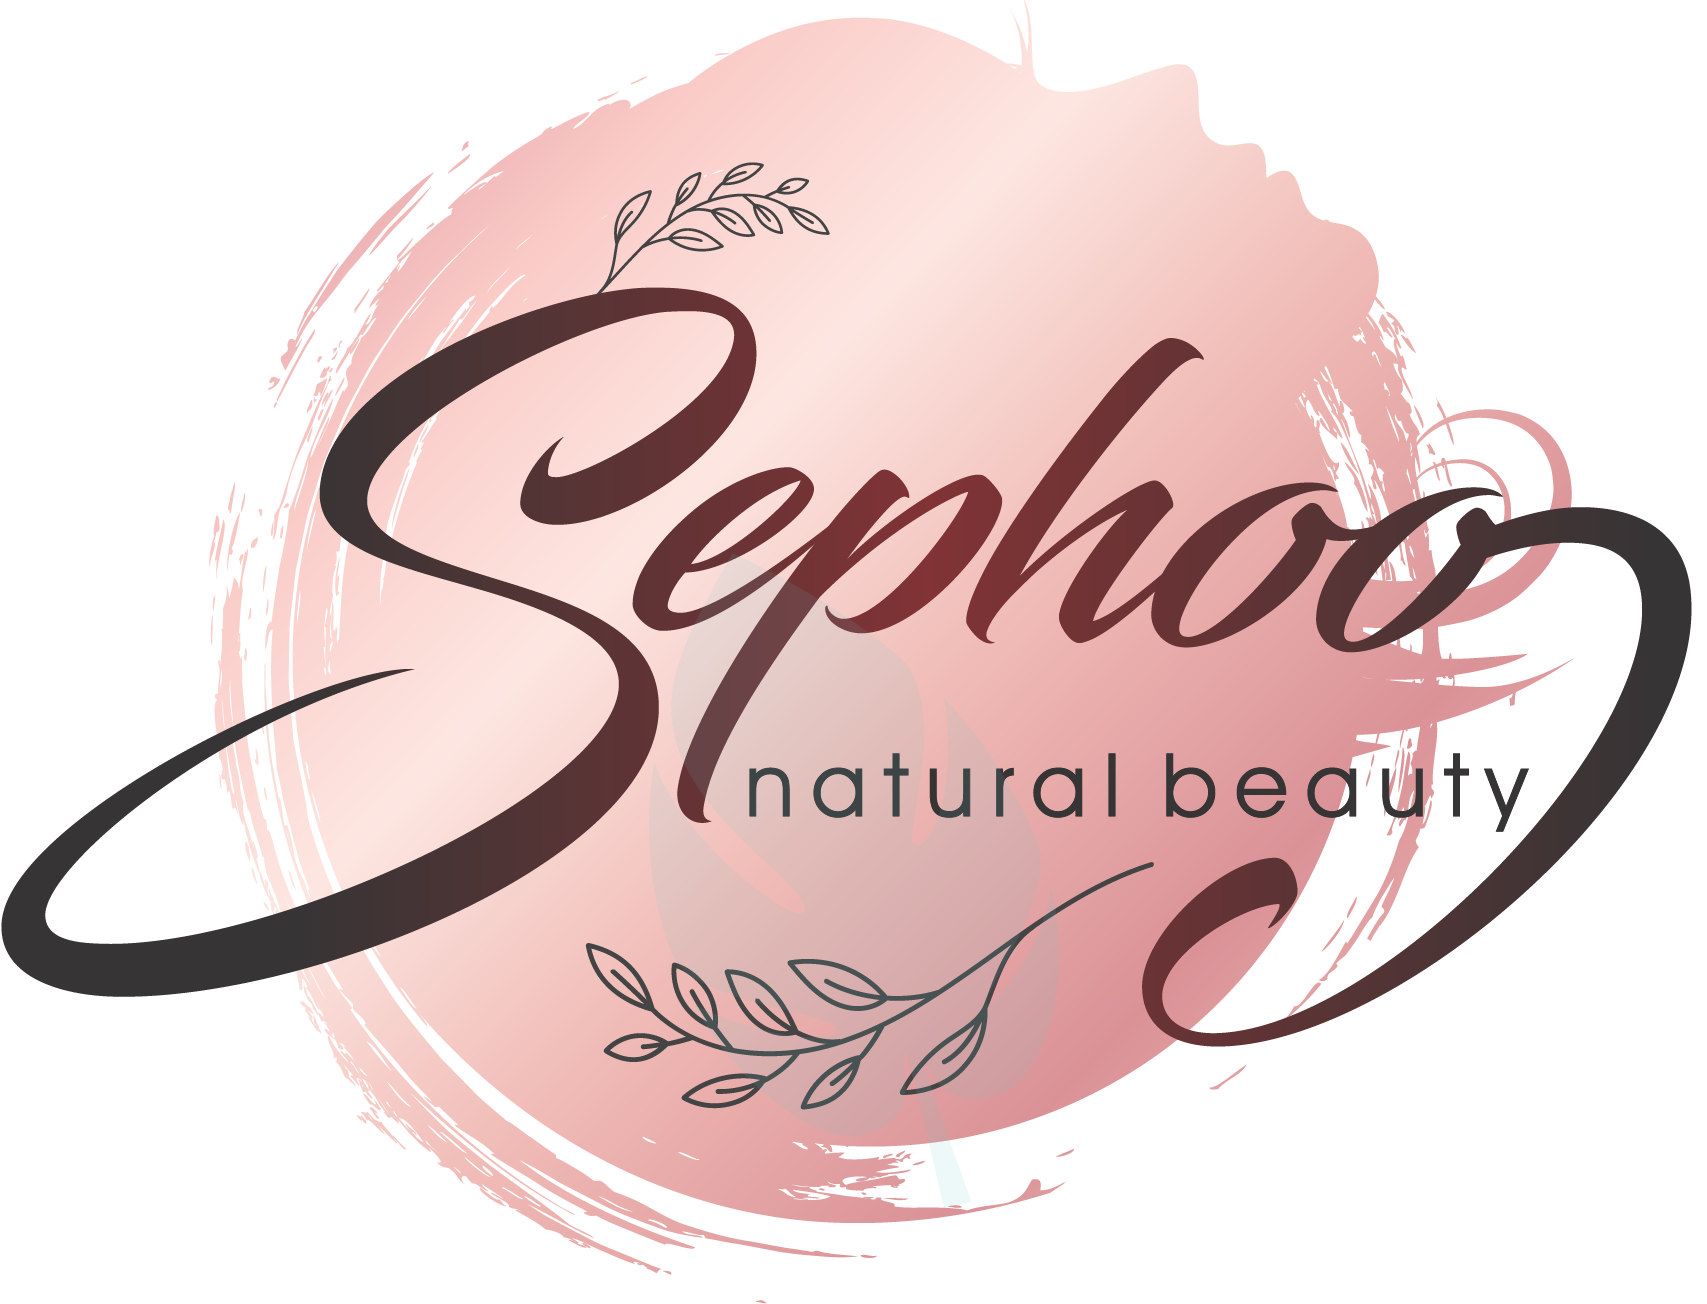 Sephoo | natural beauty